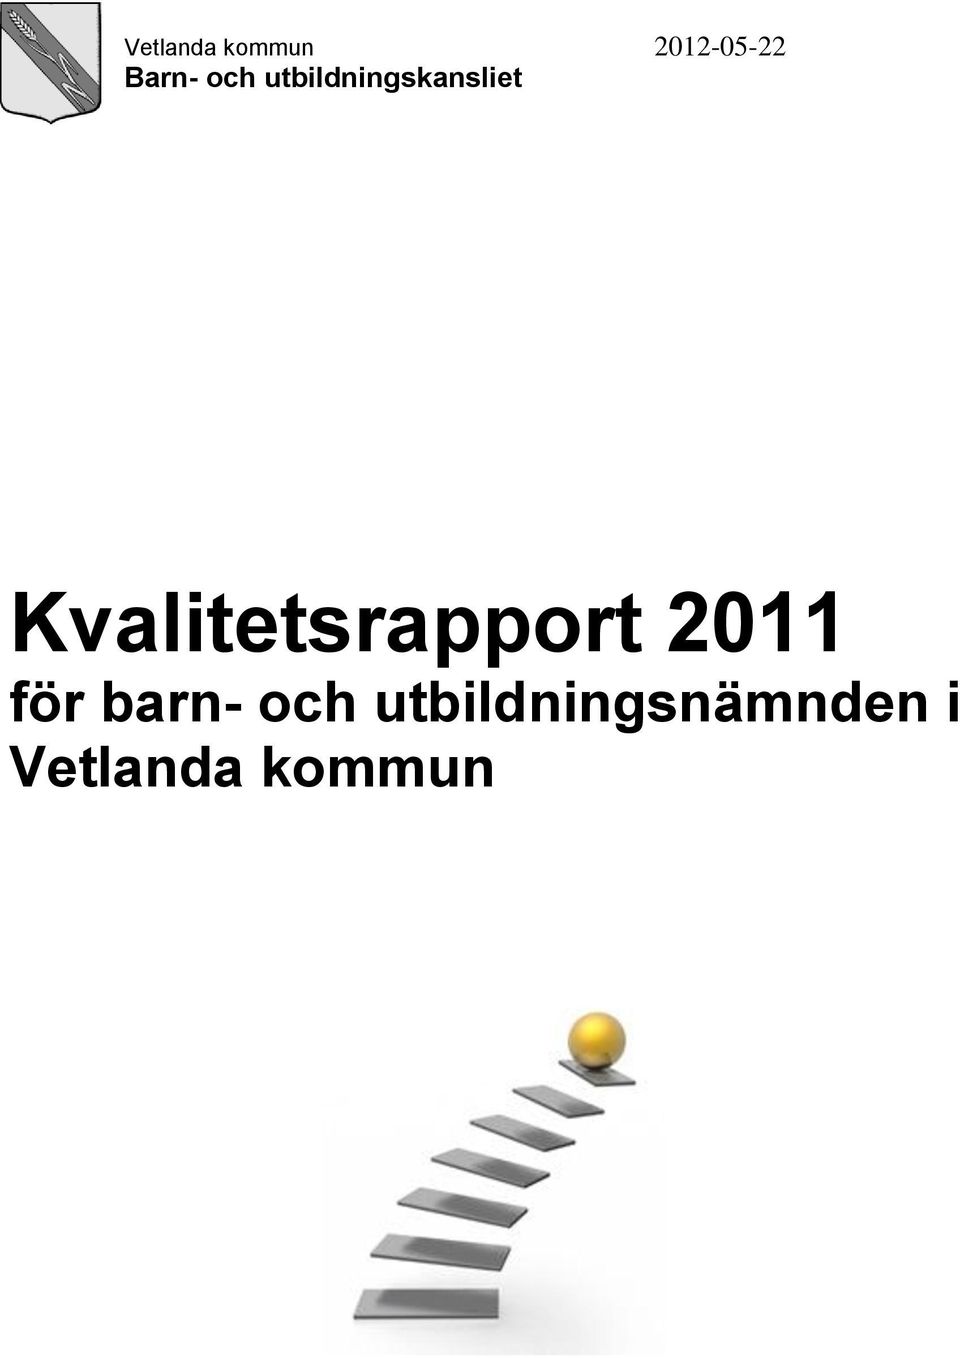 Kvalitetsrapport 2011 för barn-